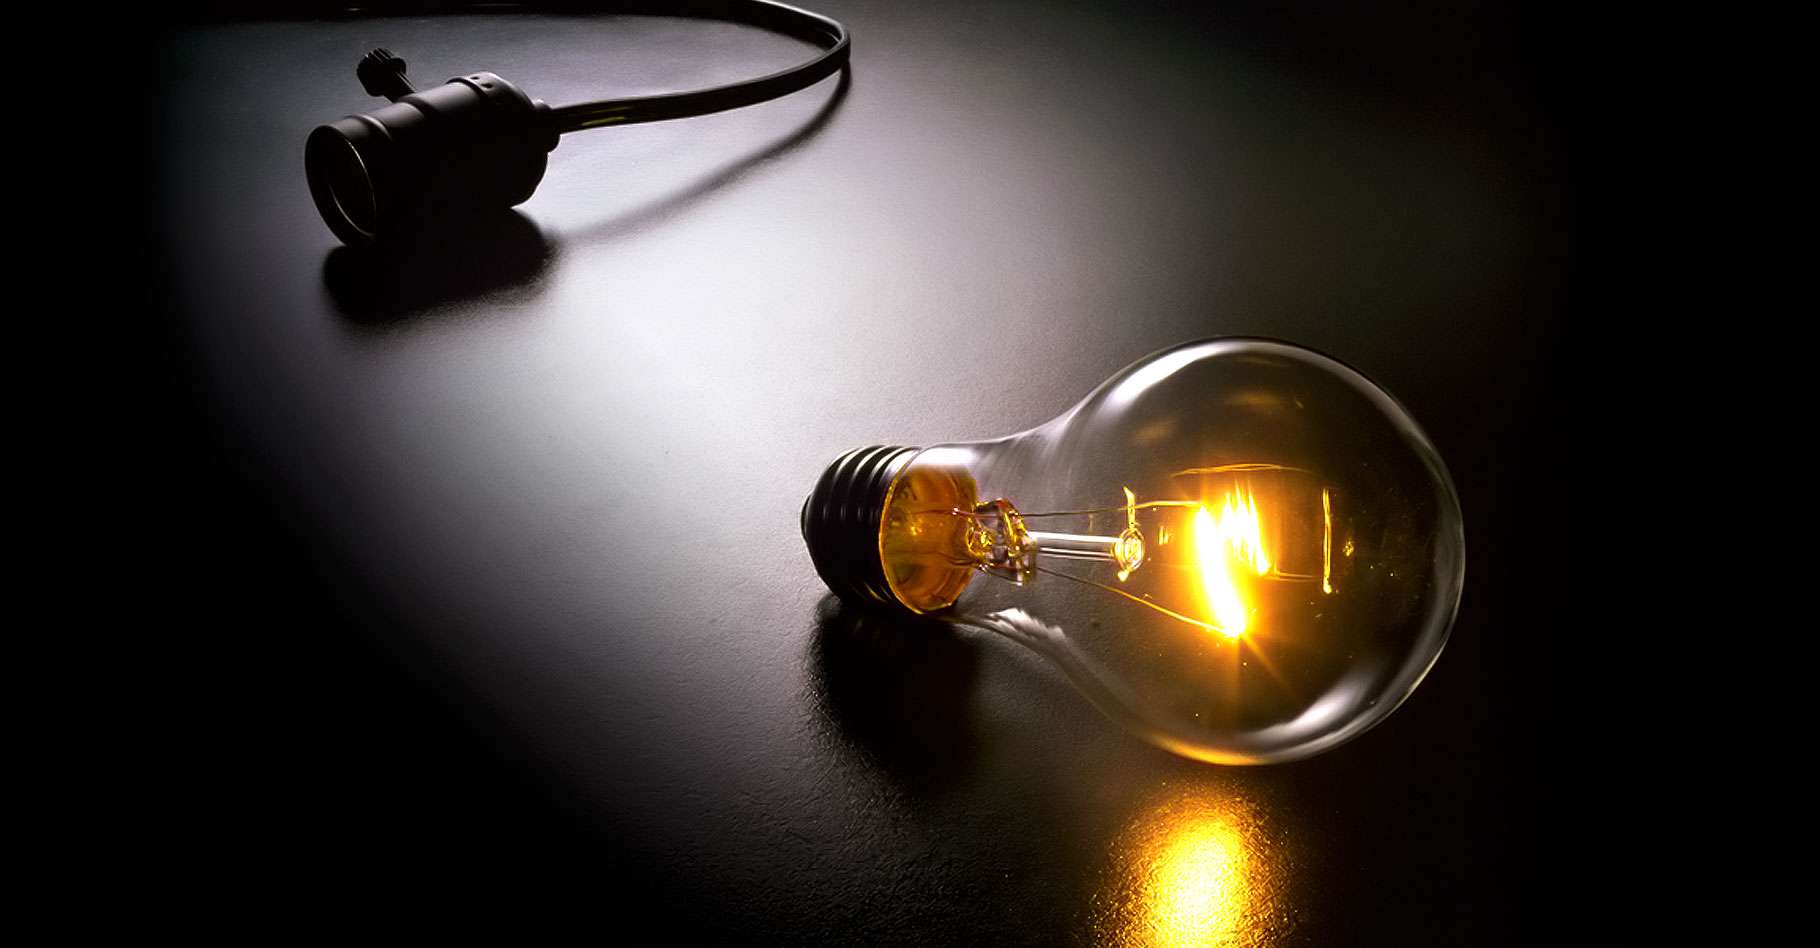 Comment Thomas Edison a inventé (ou pas) l'ampoule électrique